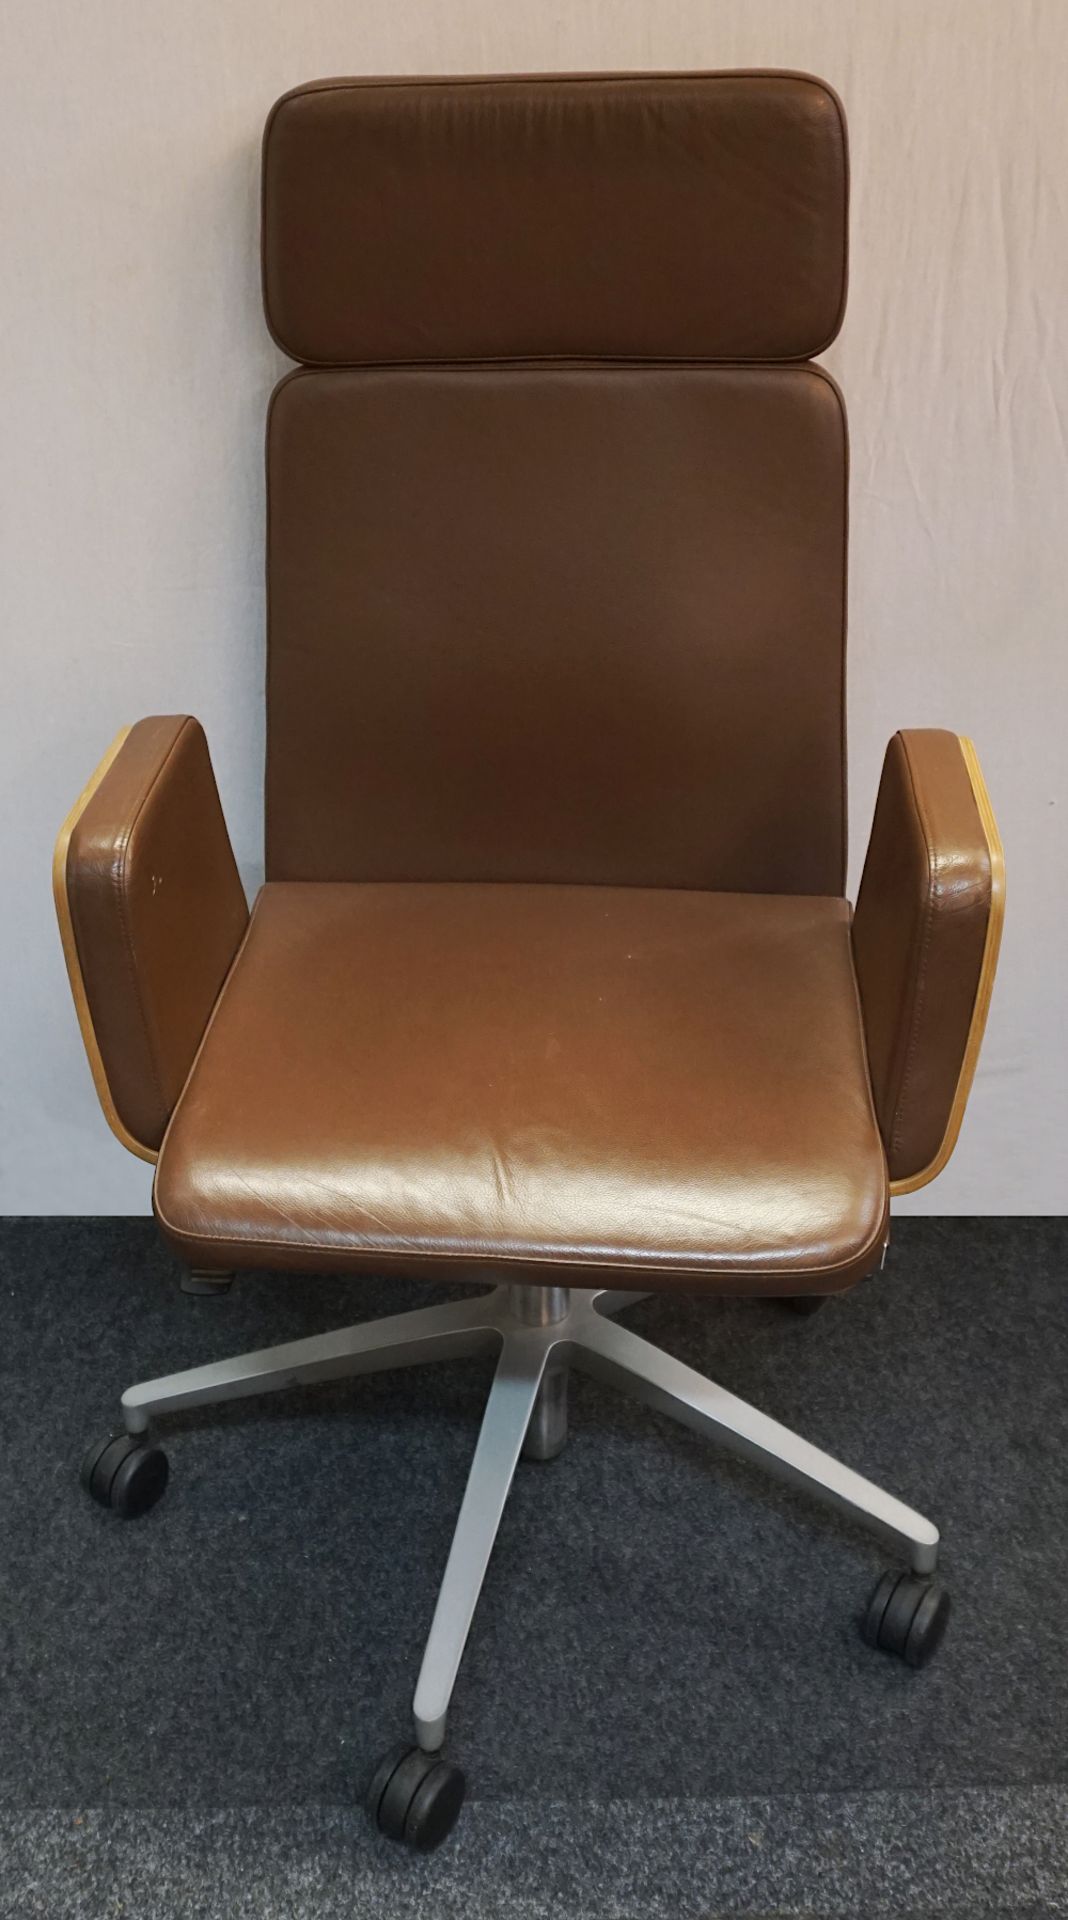 1 Bürodrehstuhl mit Kopfstütze HÜLSTA "Ergomo home office H3" mit Sitzholzschale und Rollen, z.T. be